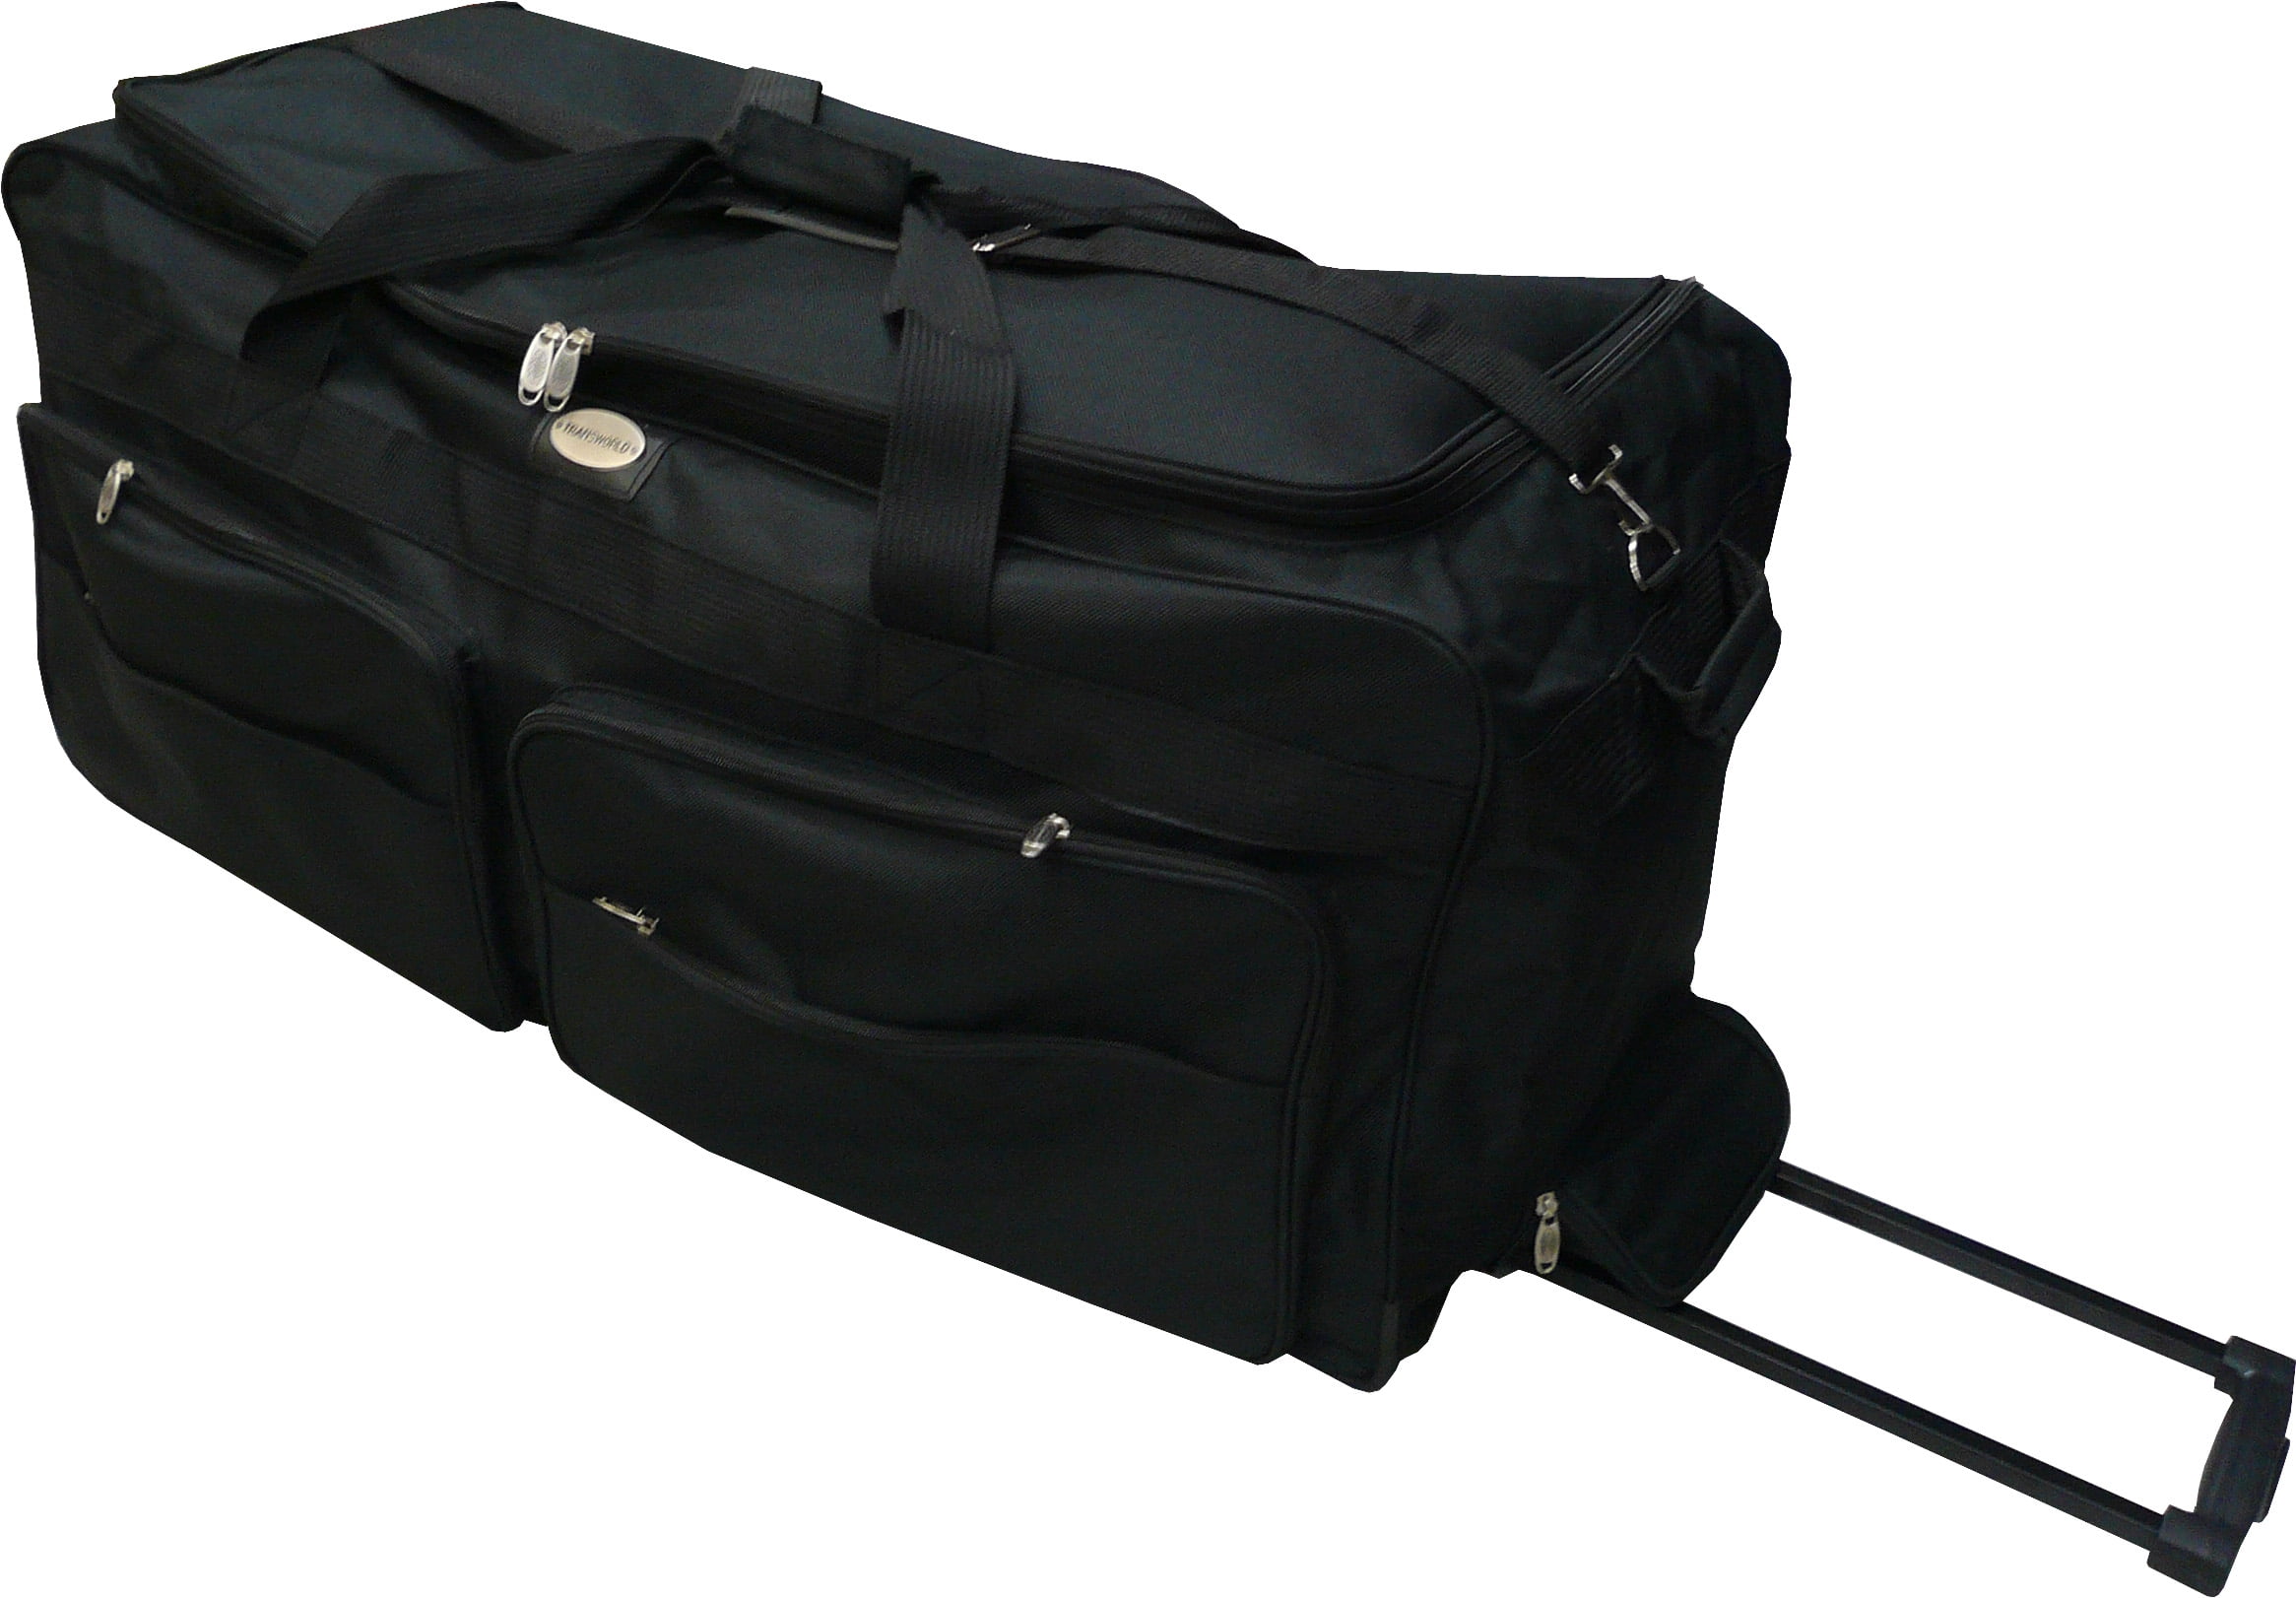 Gothamite 46 Inch Rolling Duffle Bag With Wheels Heavy Duty Duffle Bag ...